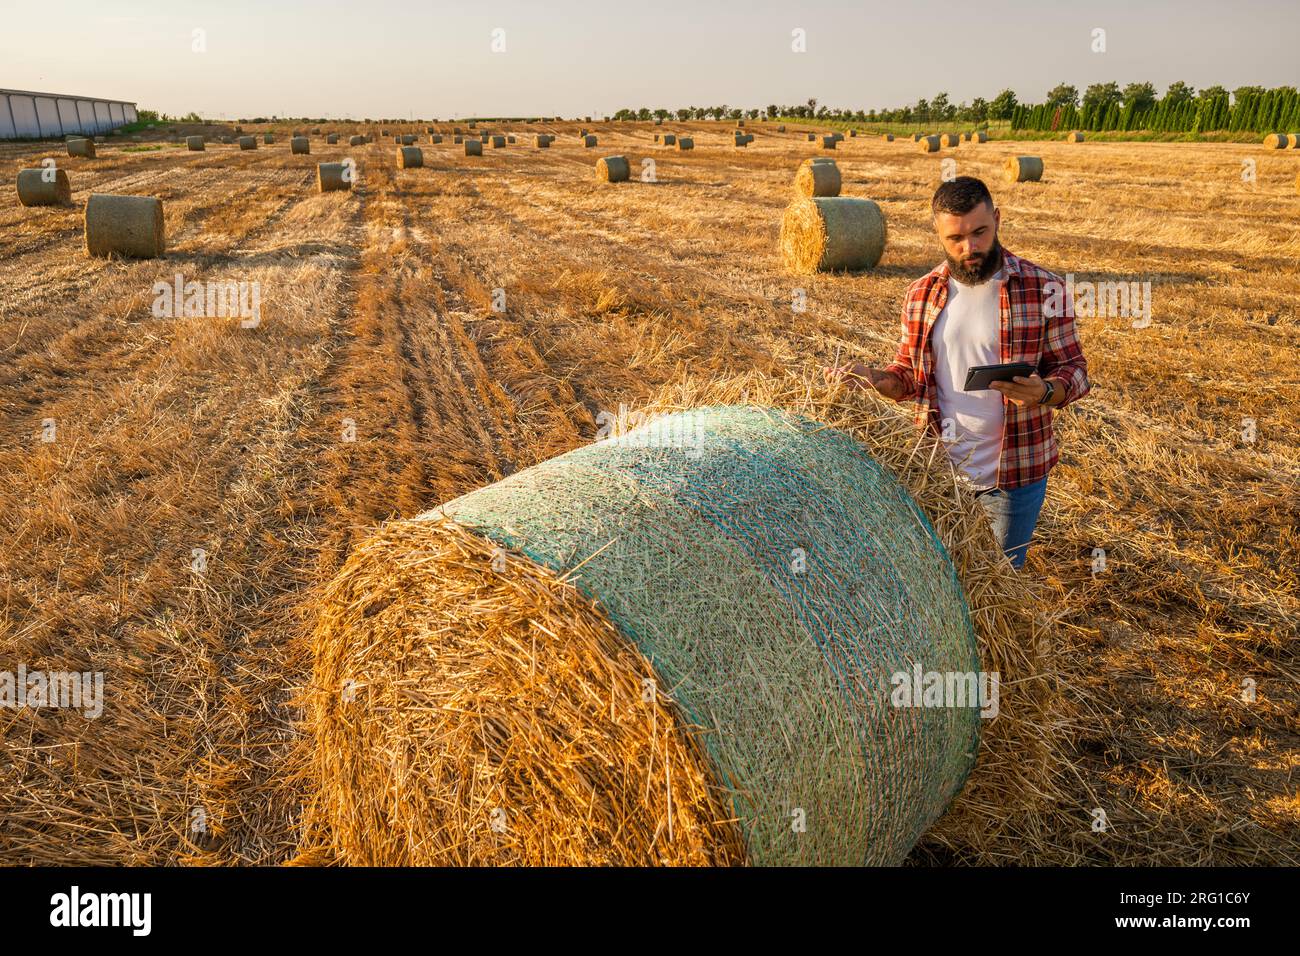 Coltivatore è in piedi accanto alle balle di fieno. Sta esaminando la paglia dopo aver raccolto con successo. Foto Stock